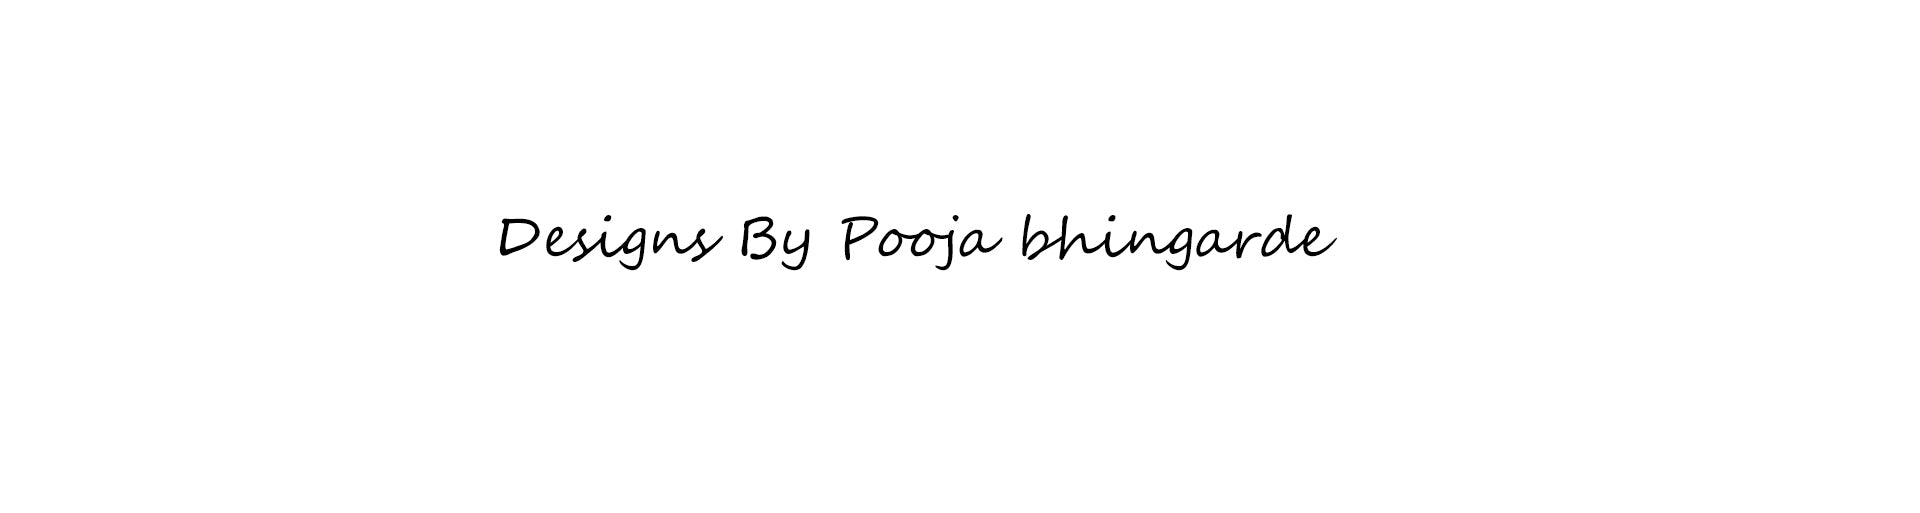 Pooja bhingarde